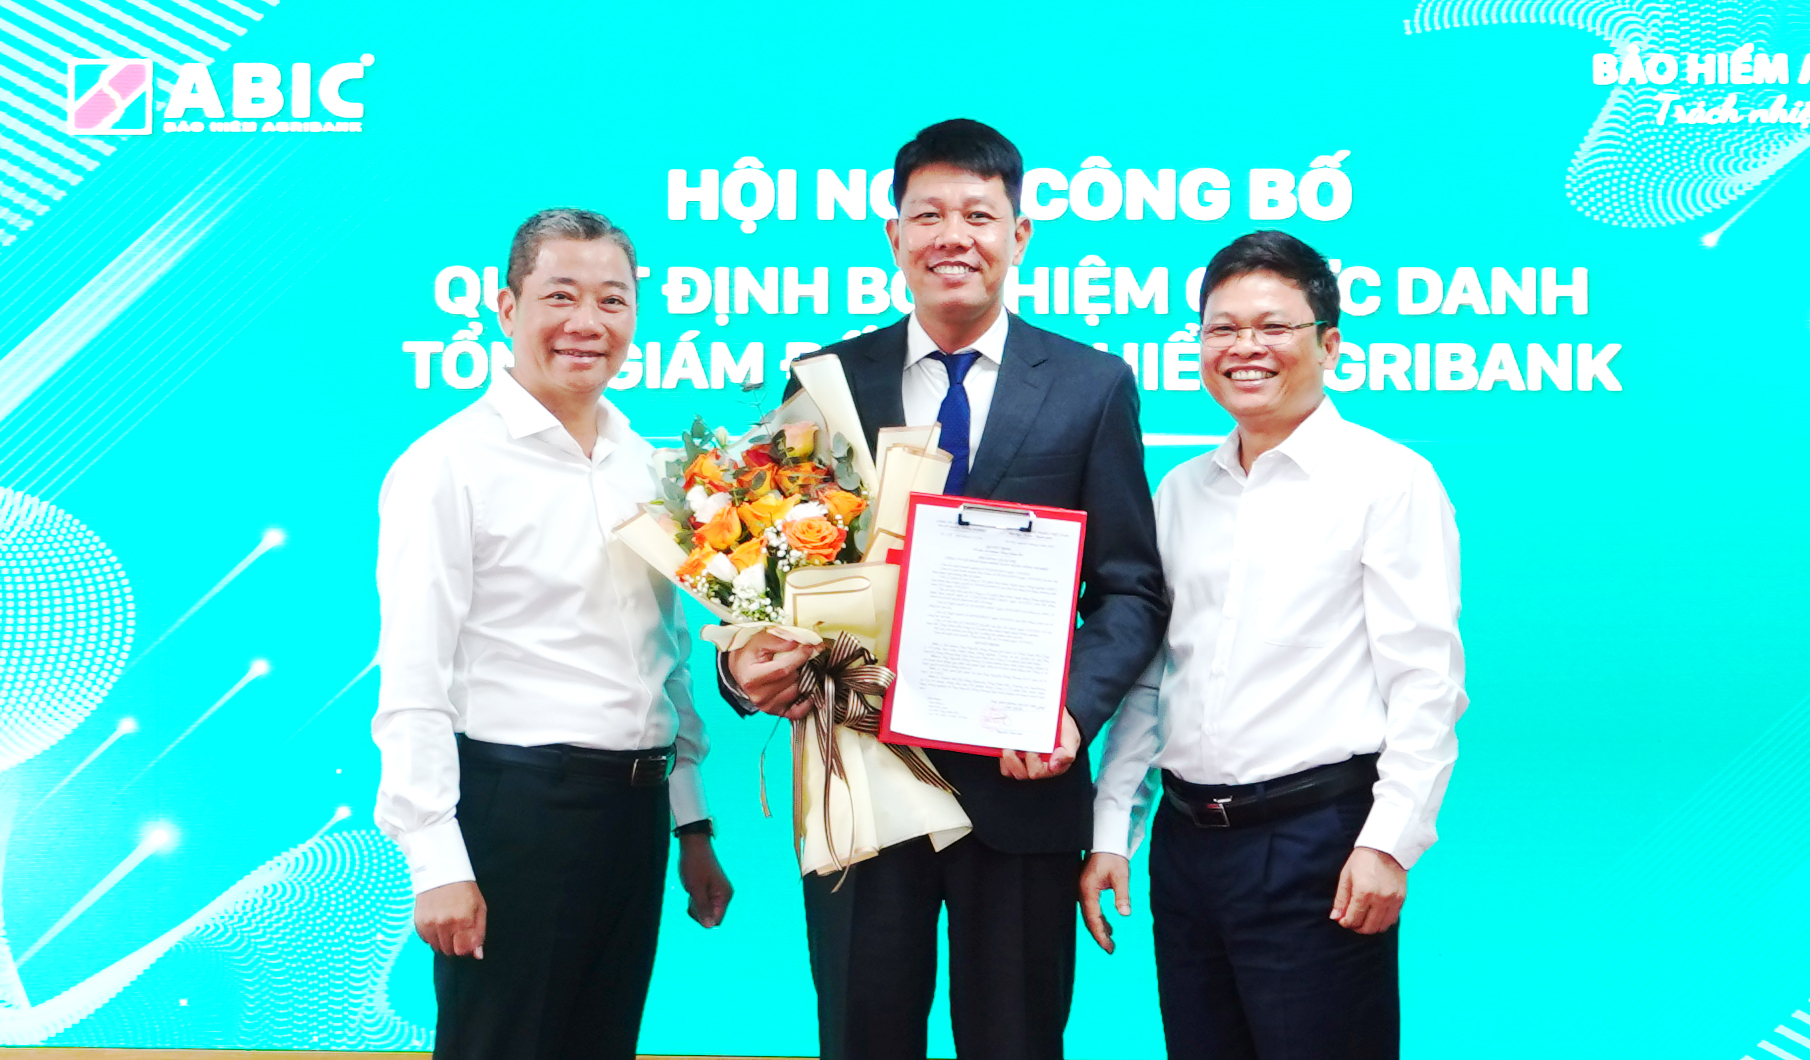 Ông Nguyễn Hồng Phong (giữa) giữ chức Tổng Giám đốc Bảo hiểm Agribank. Ảnh: ABIC.